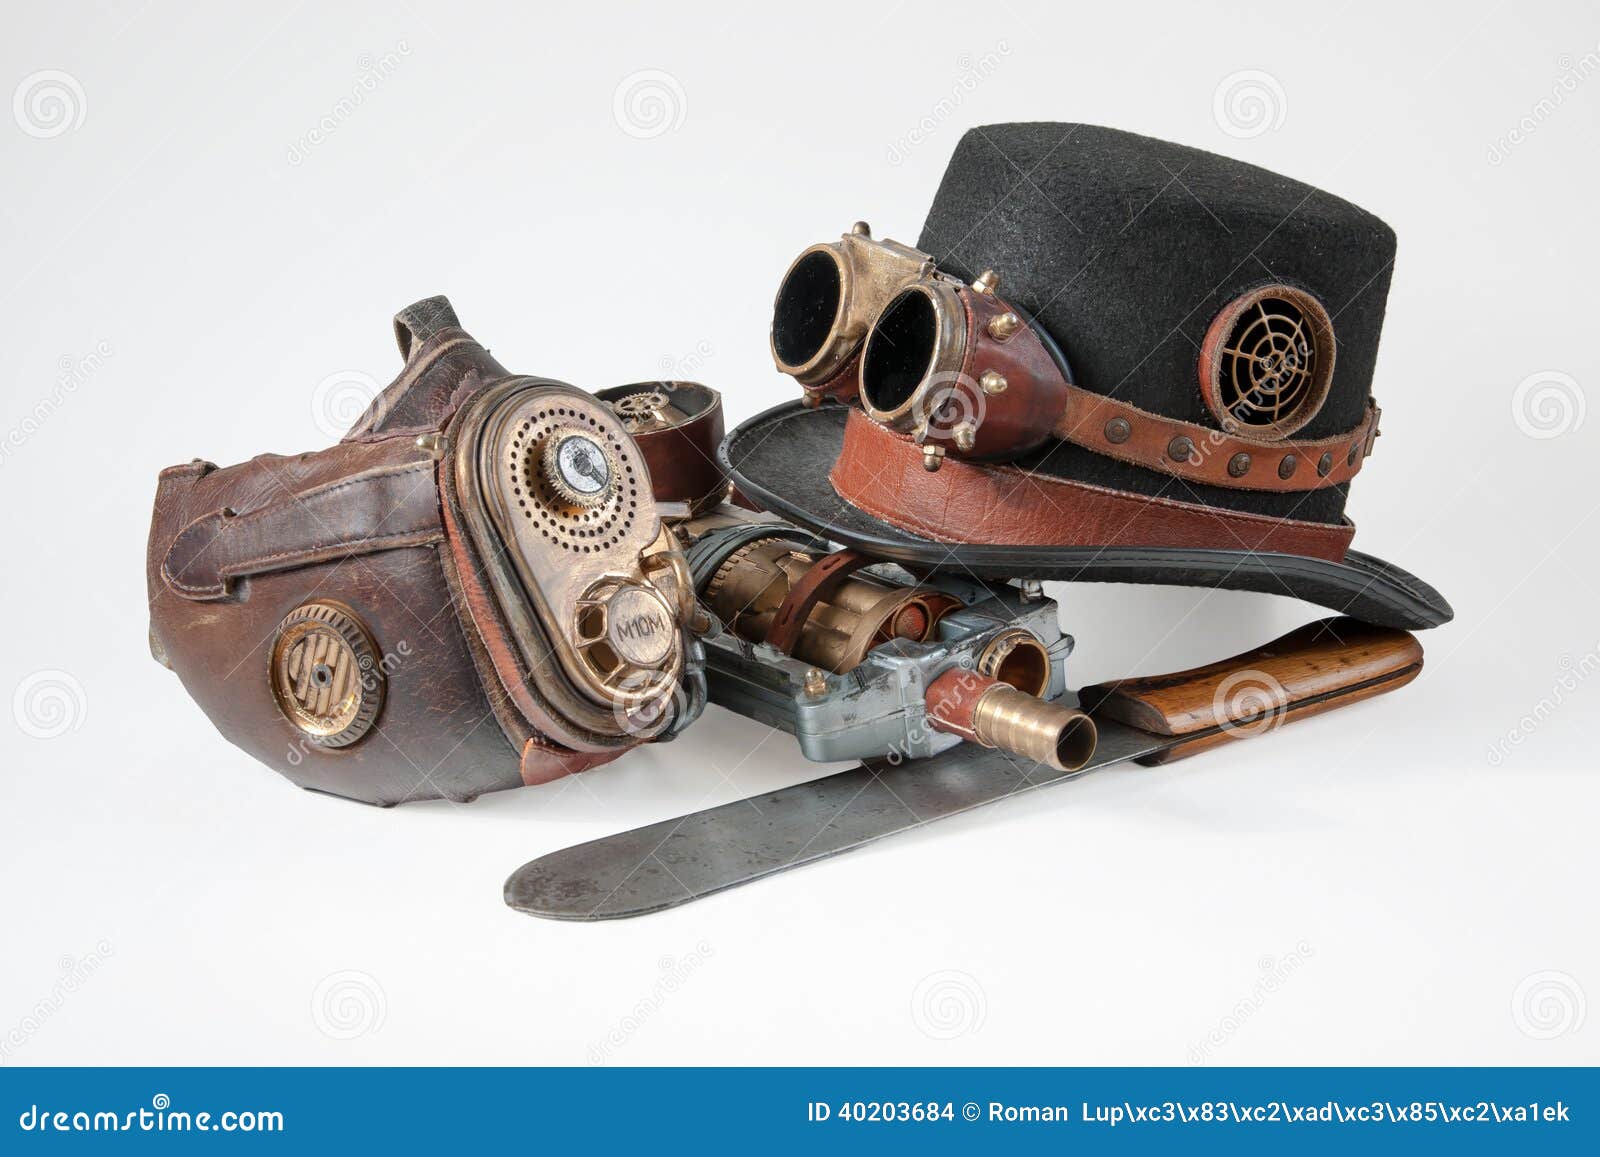 https://thumbs.dreamstime.com/z/accesorios-de-steampunk-sombrero-gafas-arma-m%C3%A1scara-y-cuchillo-40203684.jpg